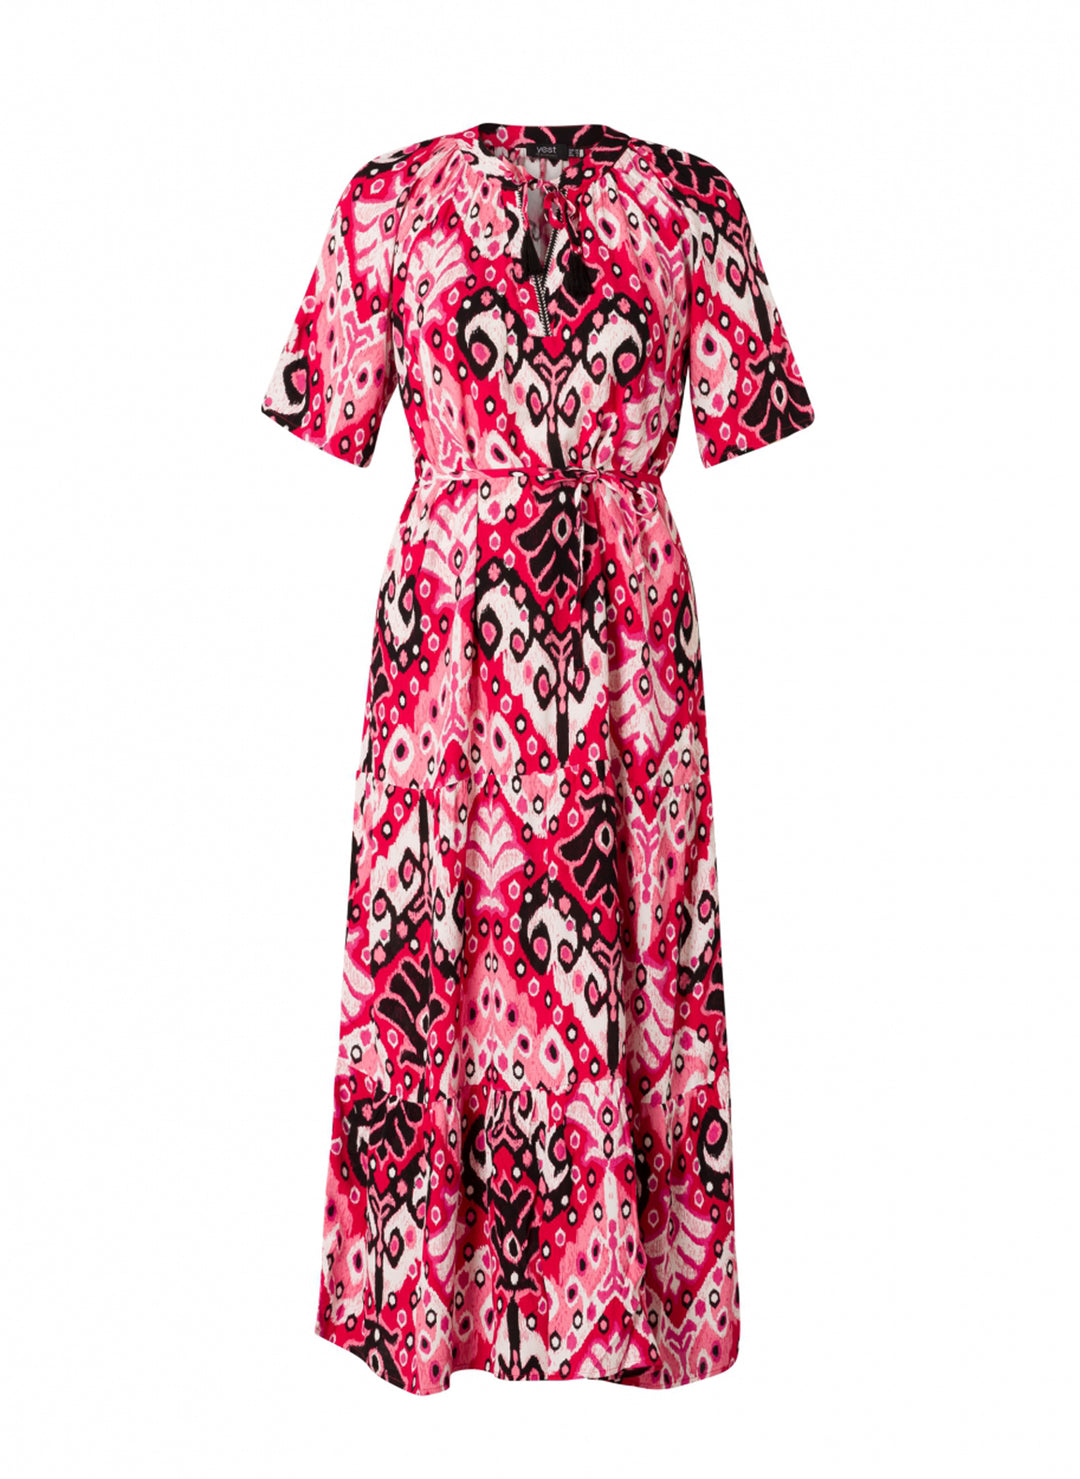 lange jurk in roze tinten - yesta - - grote maten - dameskleding - kledingwinkel - herent - leuven